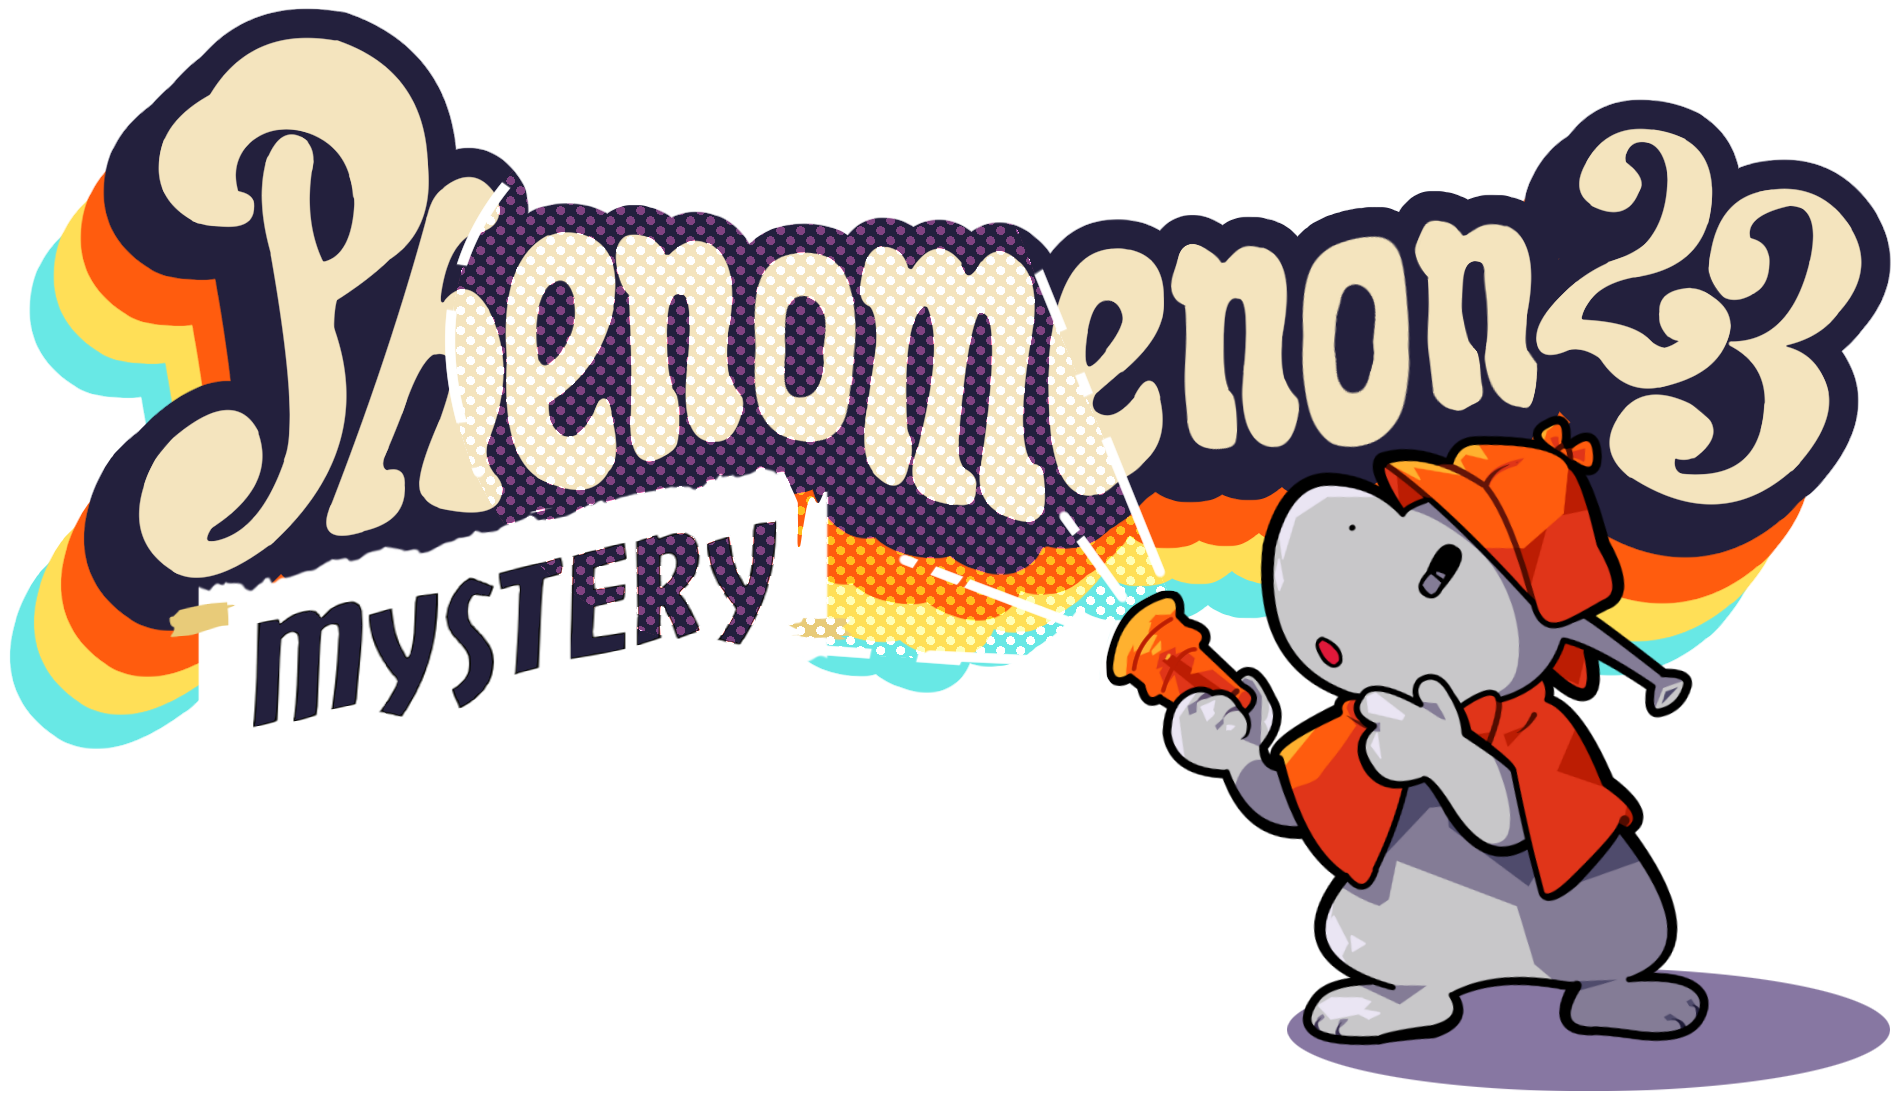 Phenomenon 2023: Mystery!